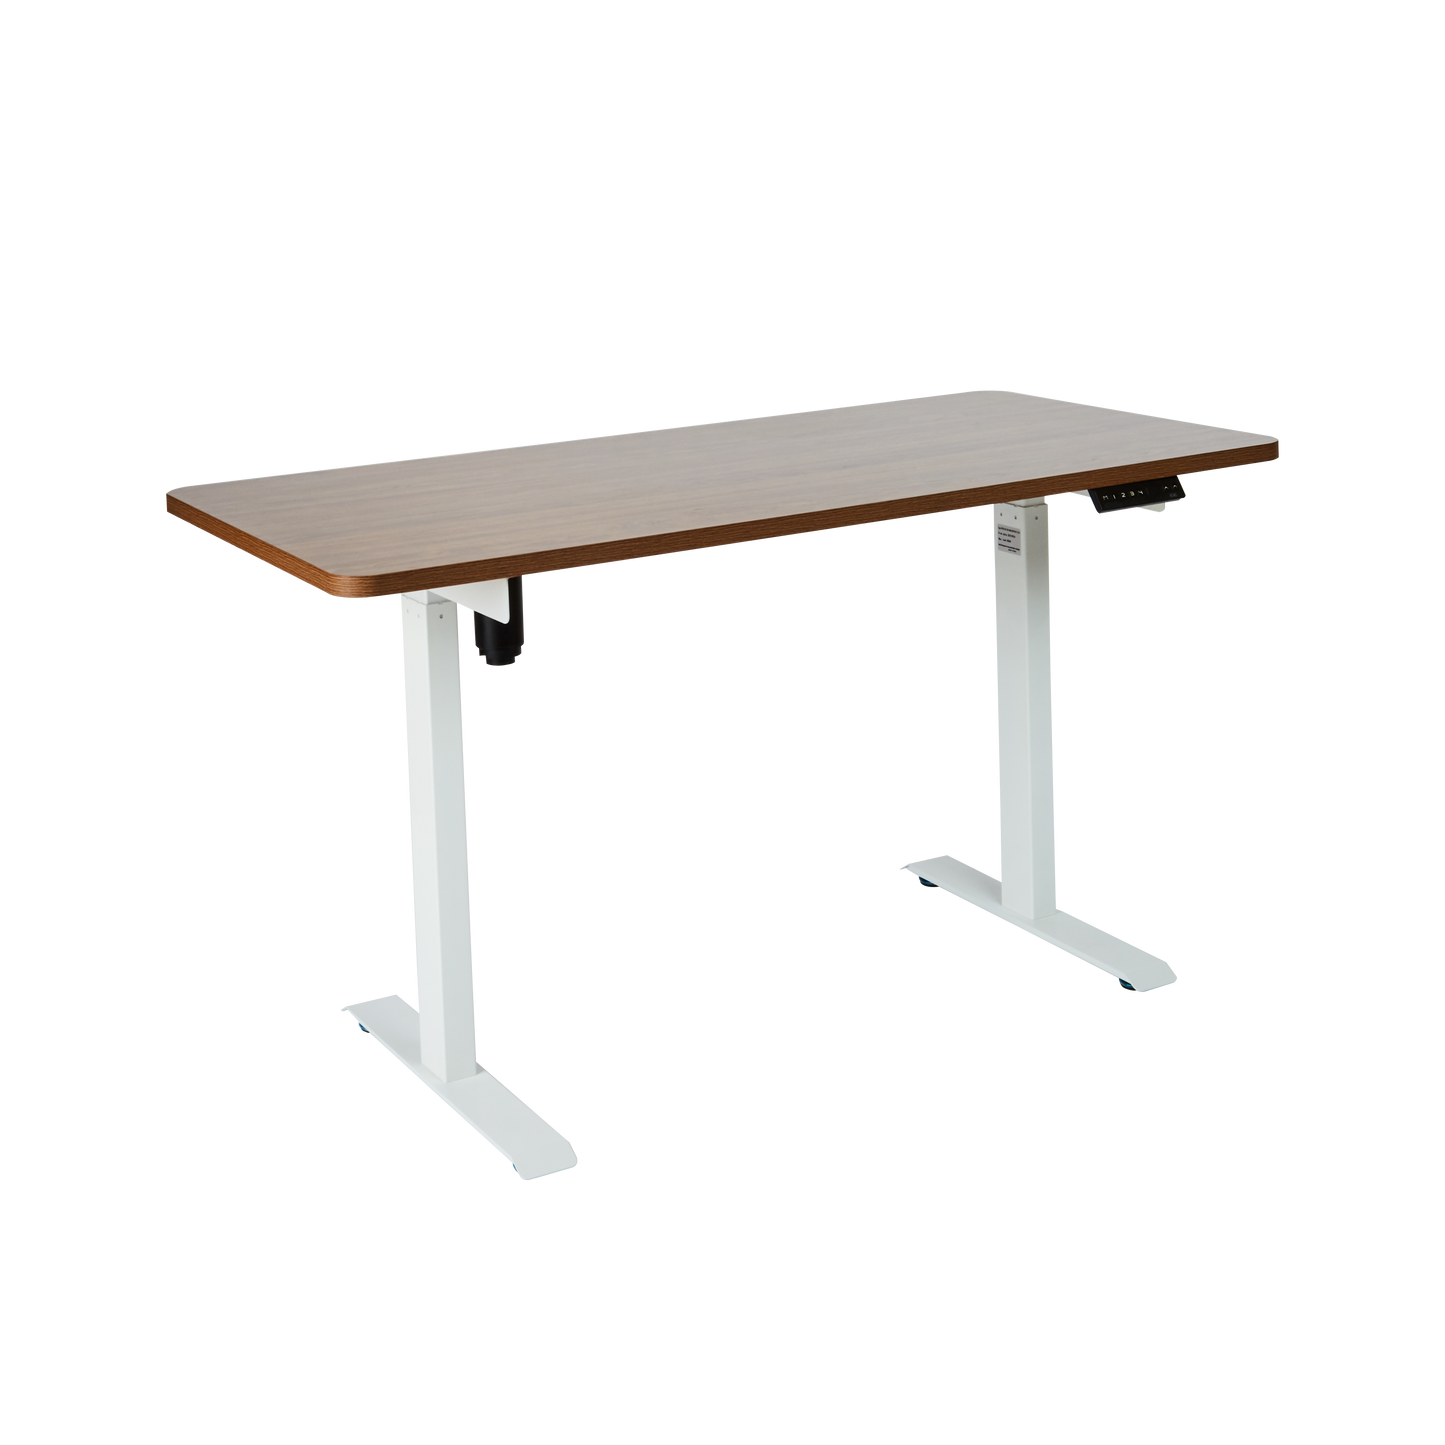 โต๊ะทำงานปรับระดับไฟฟ้า Single Motor + 2 Stages ไซต์ S (60x120 เซนติเมตร)